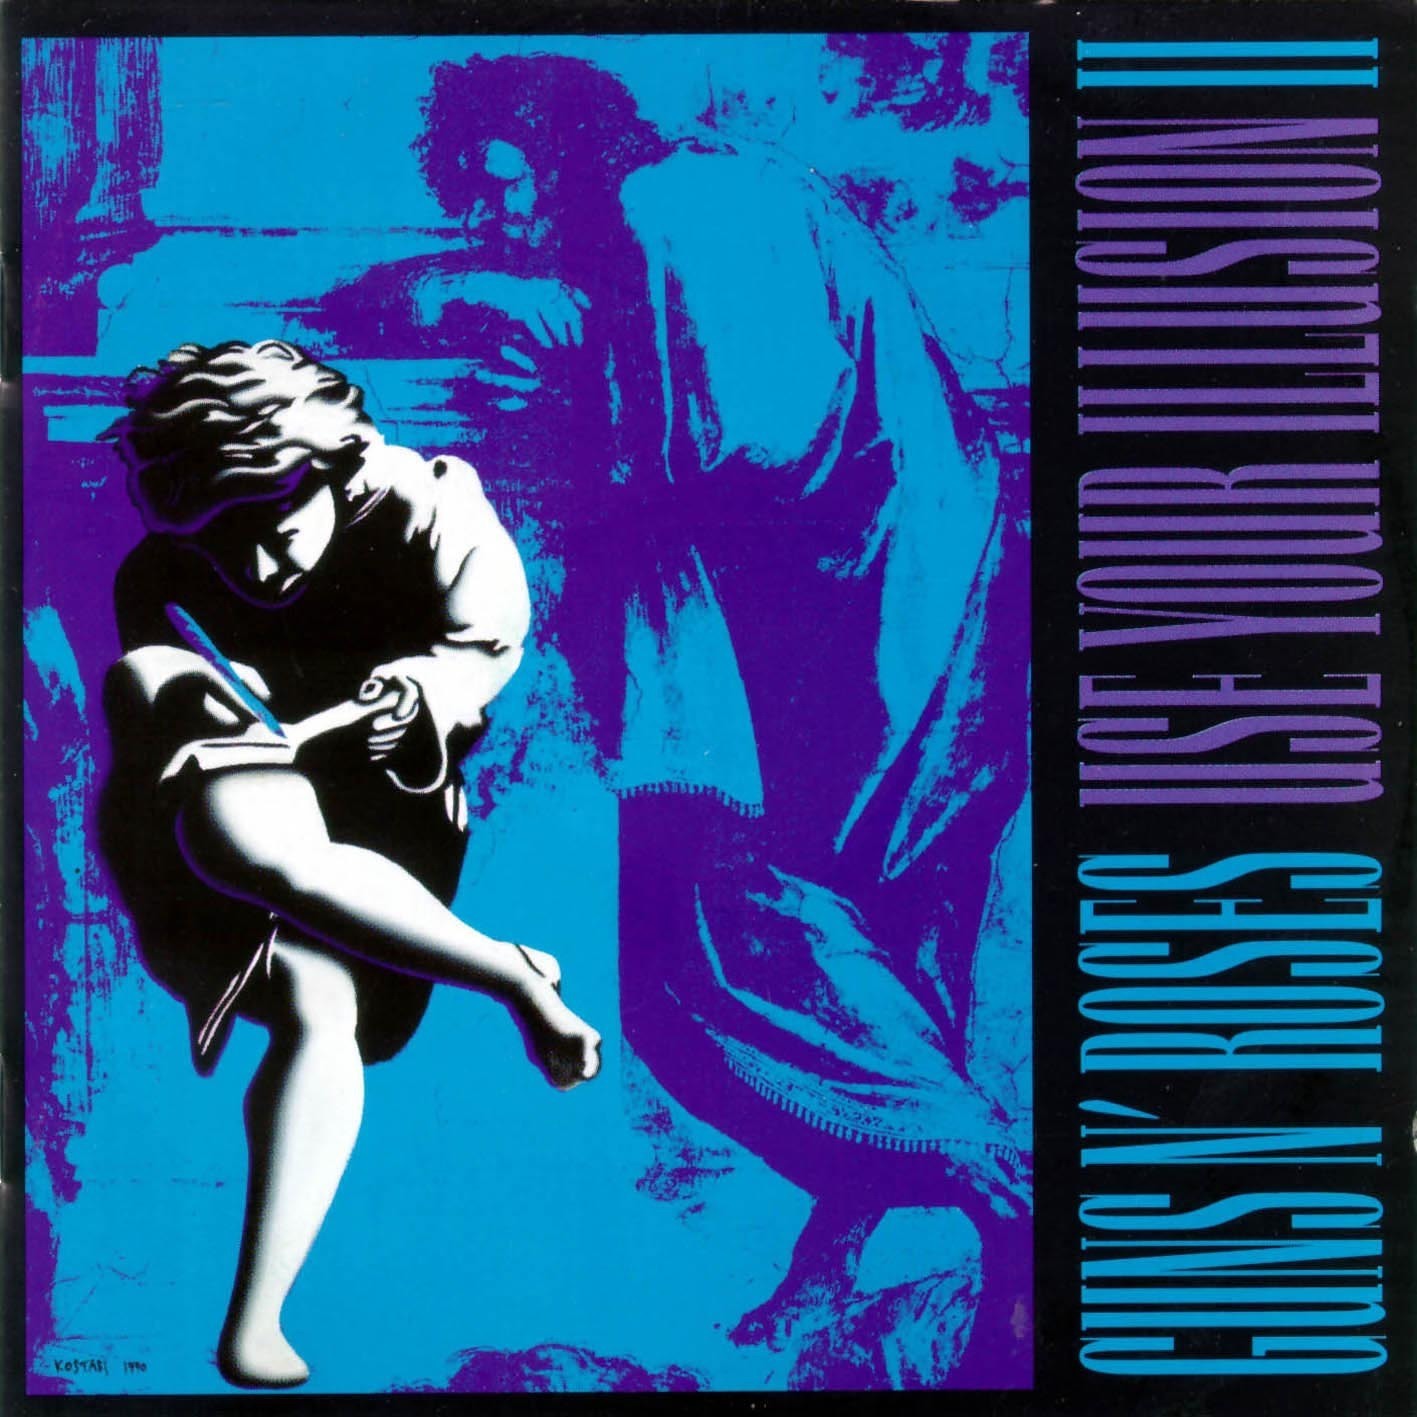 Виниловая пластинка Guns N' Roses, Use Your Illusion Ii (0602445117314) guns n roses use your illusion i remastered 2022 2lp спрей для очистки lp с микрофиброй 250мл набор